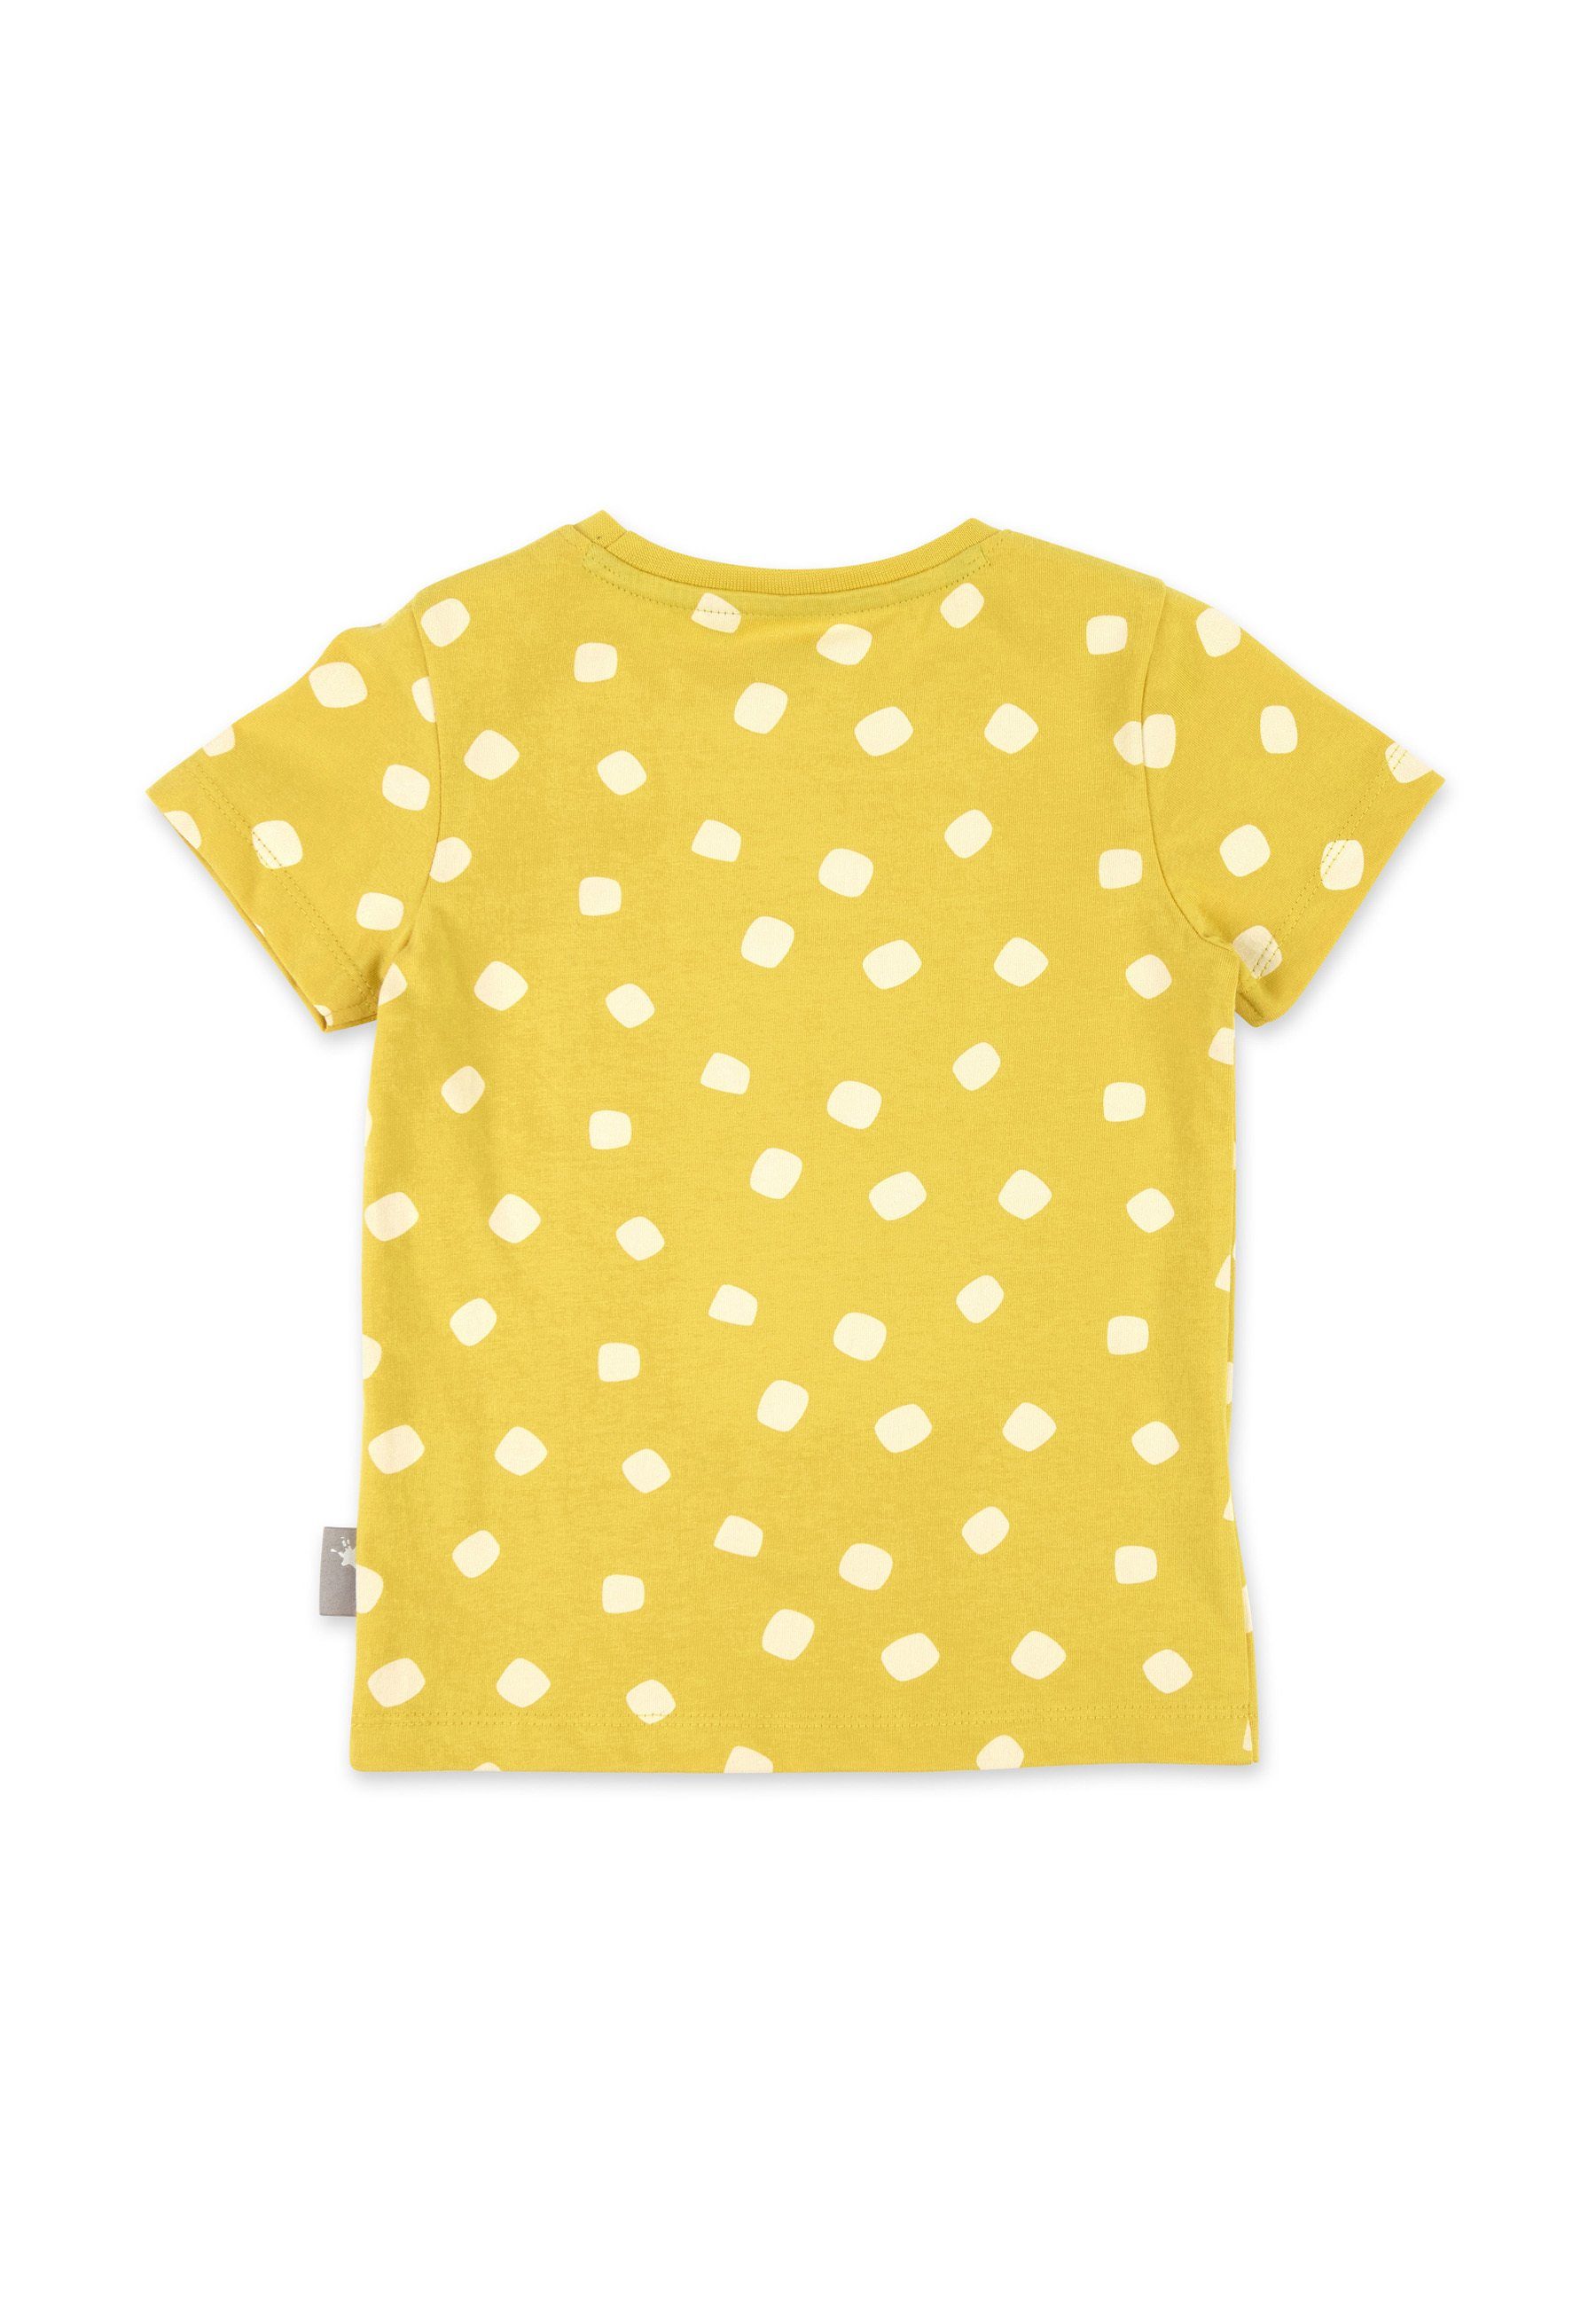 Sigikid Pyjama Kinder Nachtwäsche tlg) (2 gelb/blau Pyjama